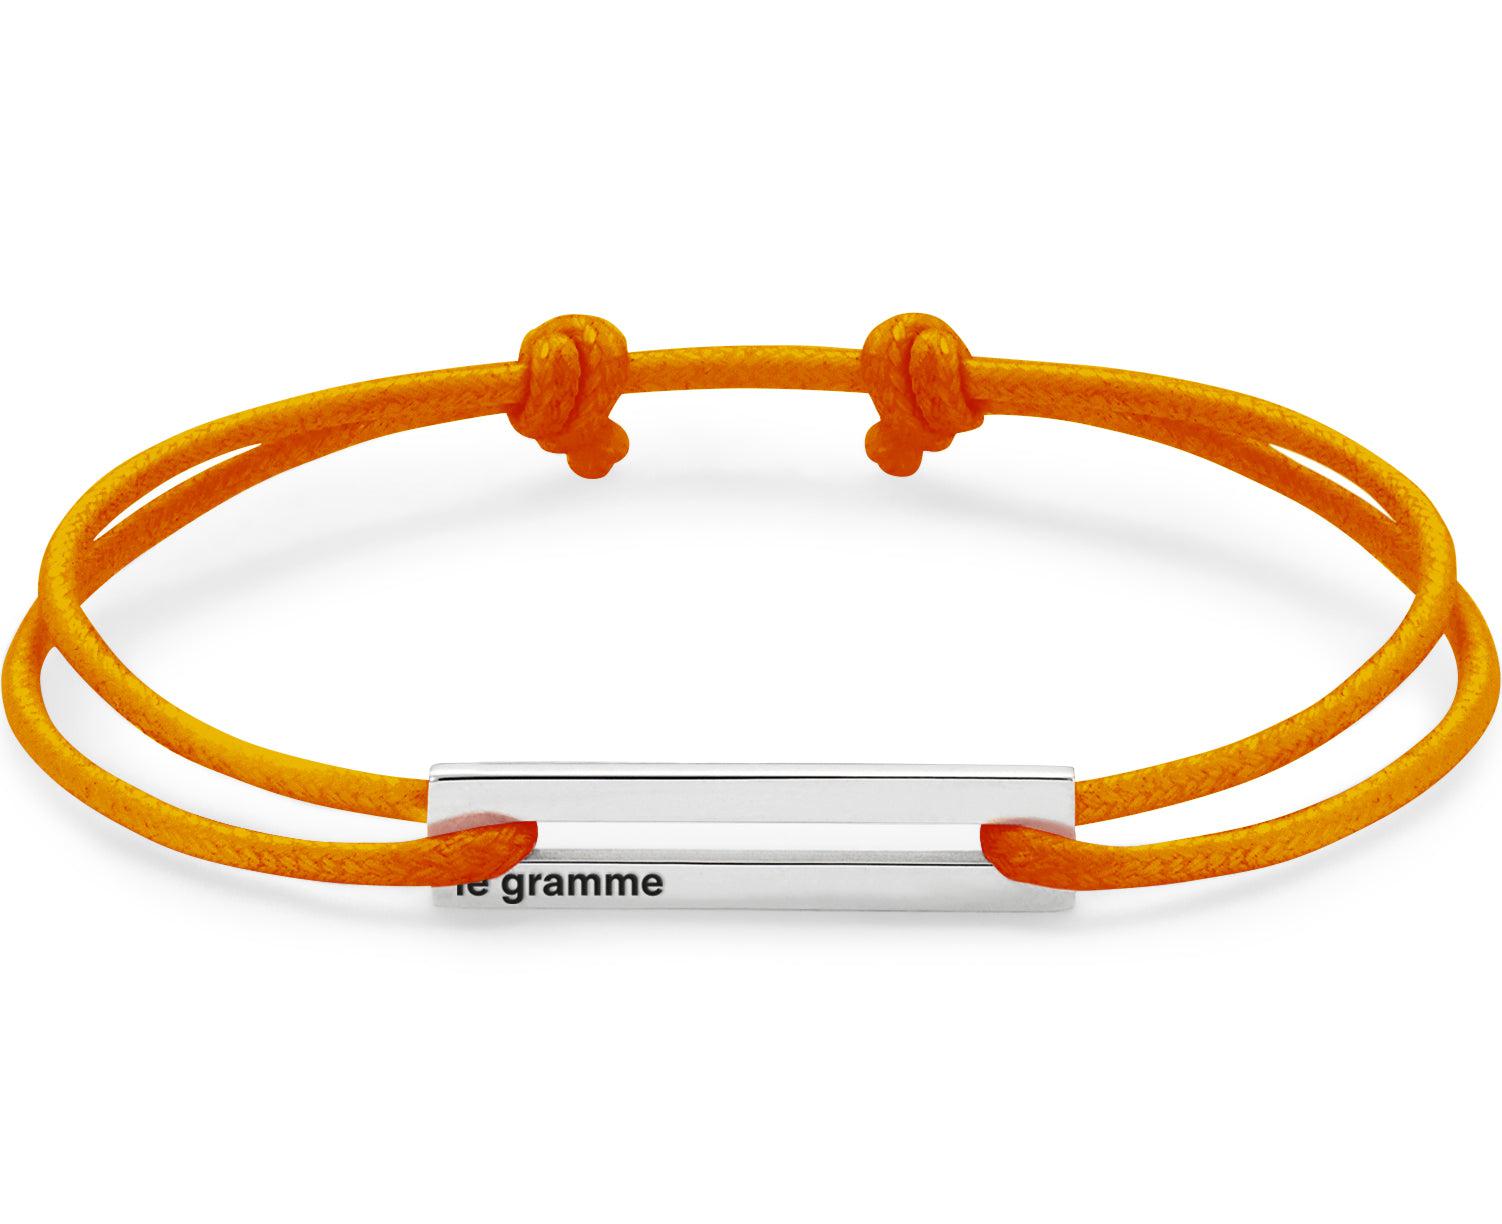 bracelet cordon orange perforé le 1,7g